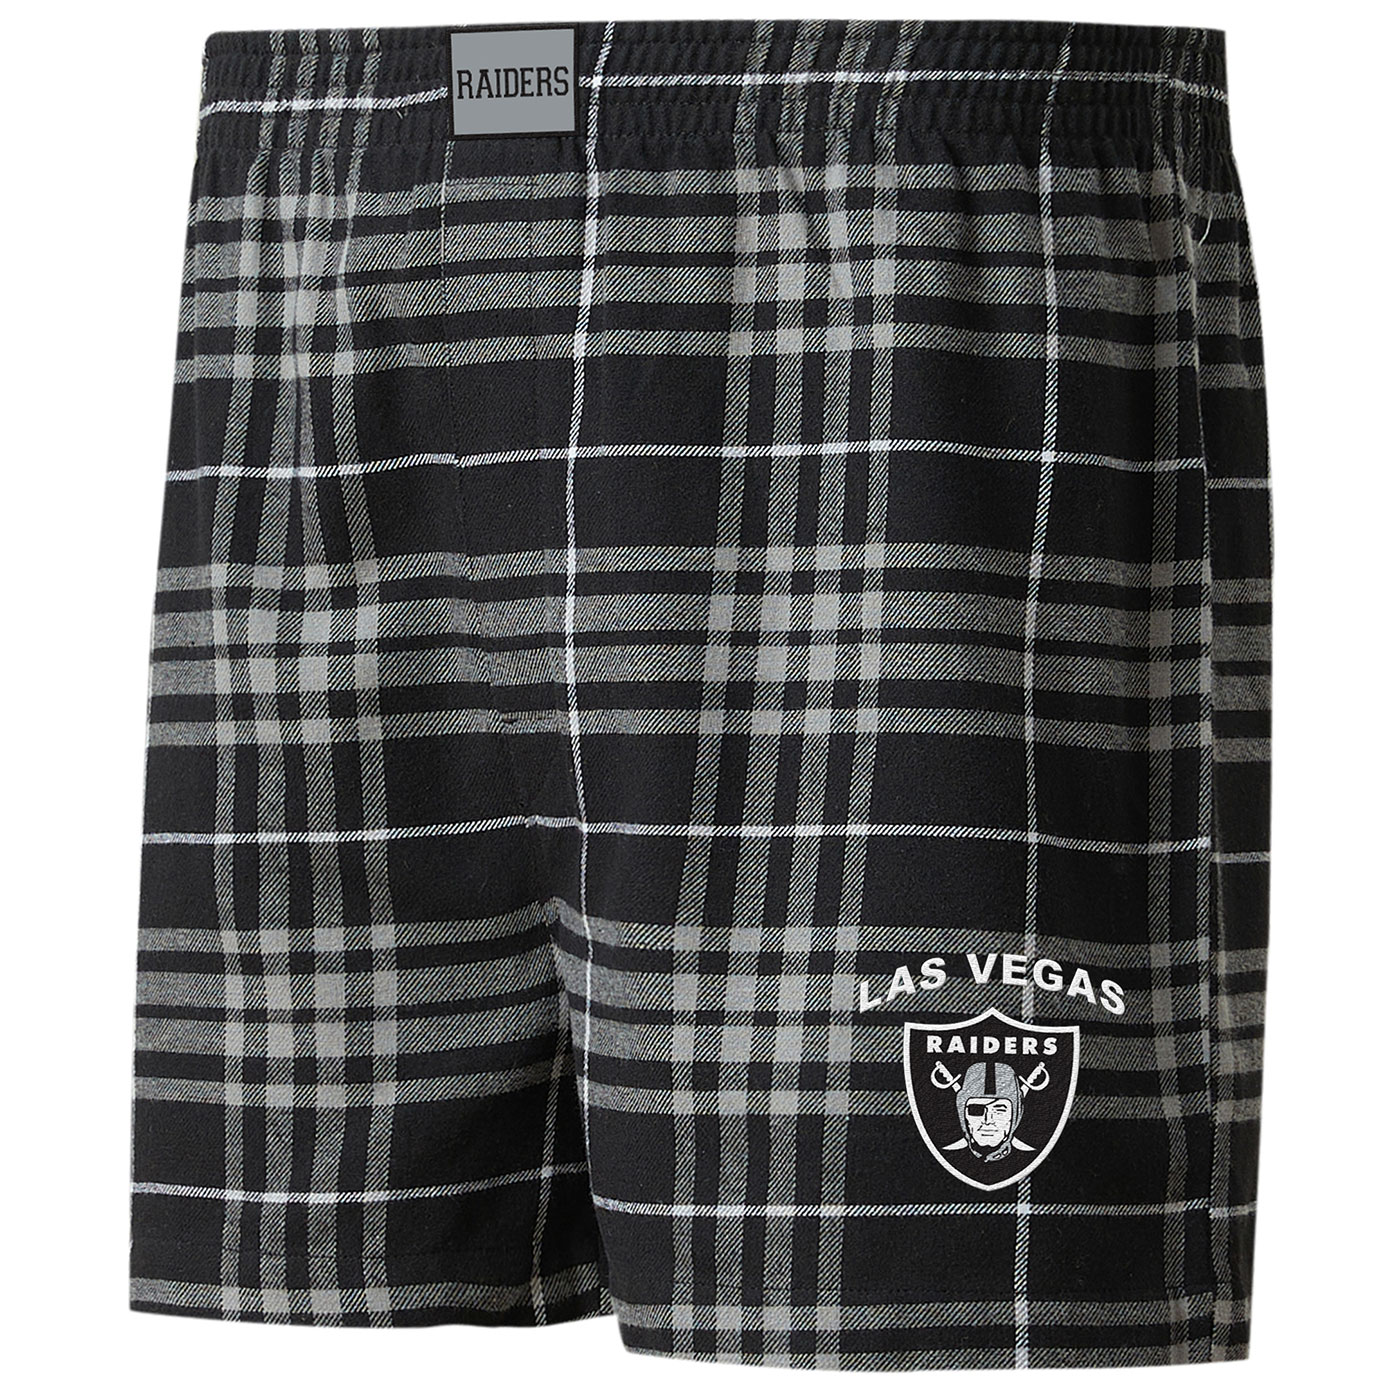 Las Vegas Raiders Pajamas, Raiders Underwear